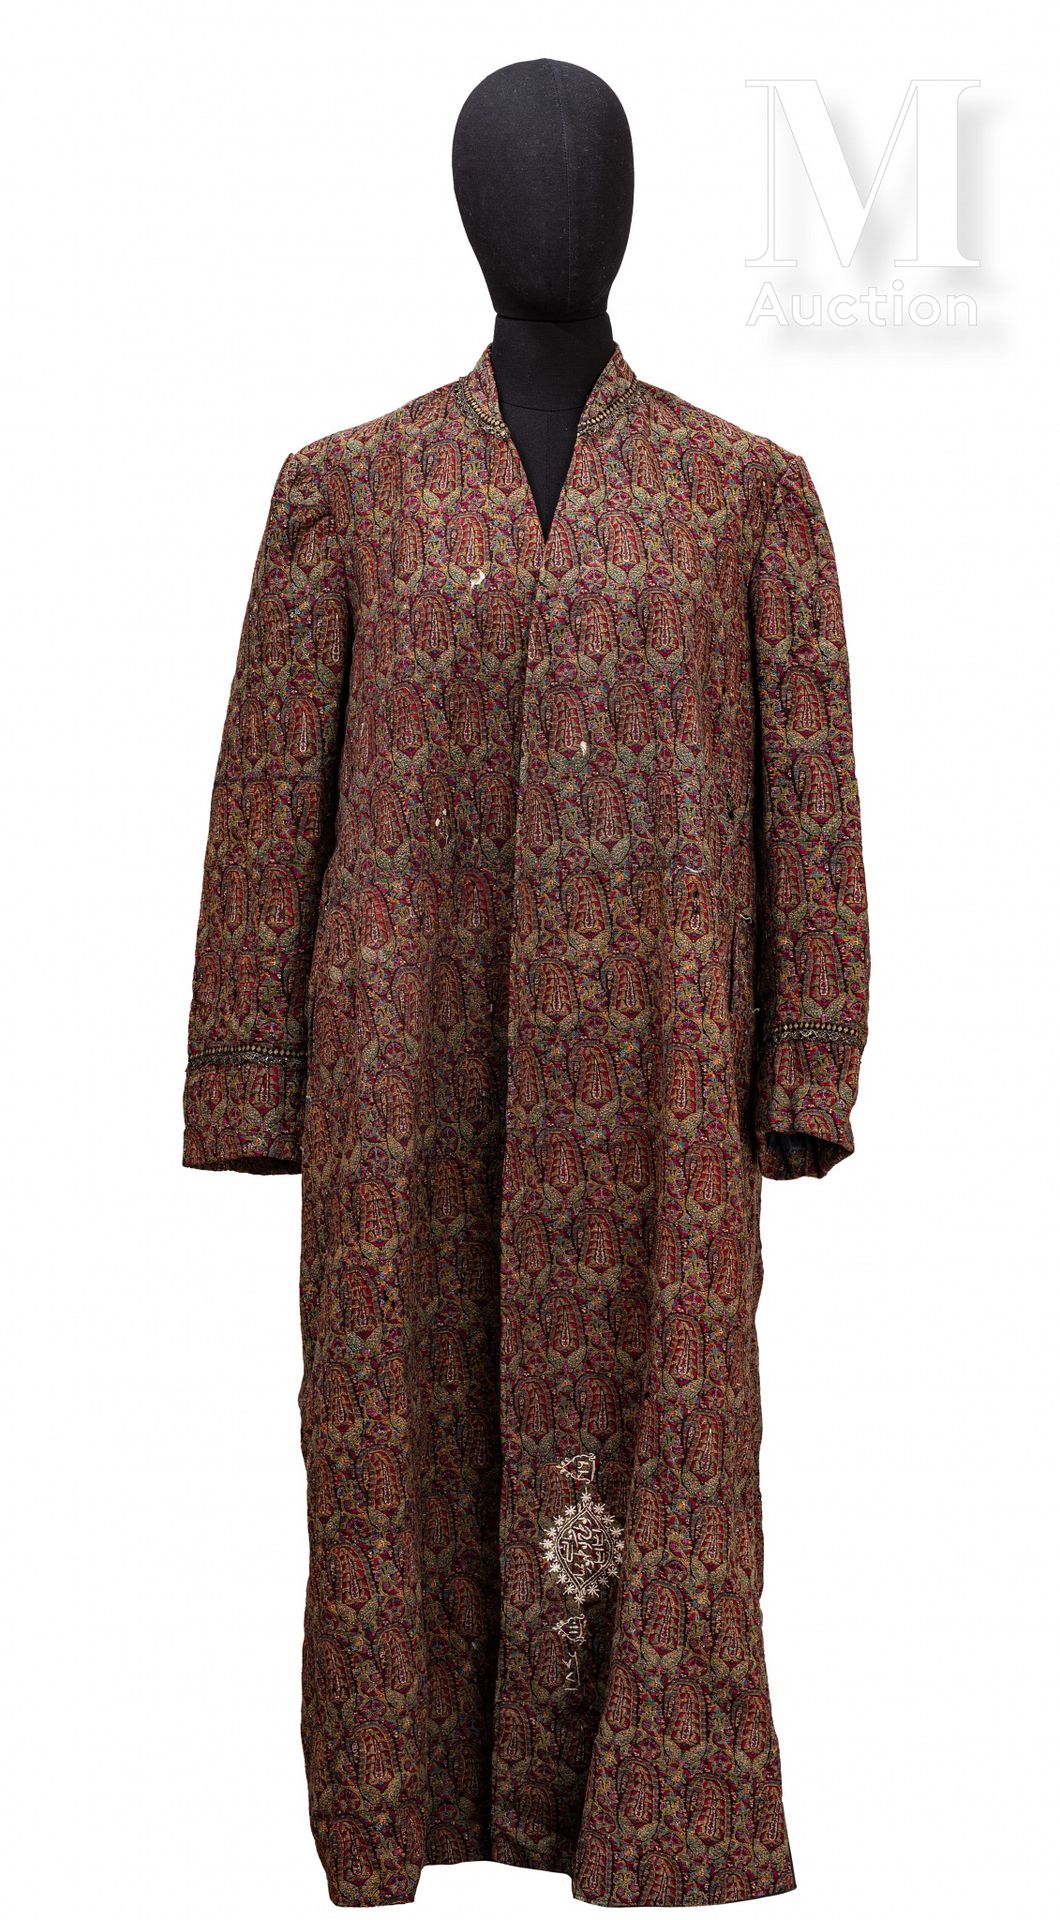 Manteau Qajar Iran, XIX secolo

Indumento in lana e seta tessuto con un motivo a&hellip;